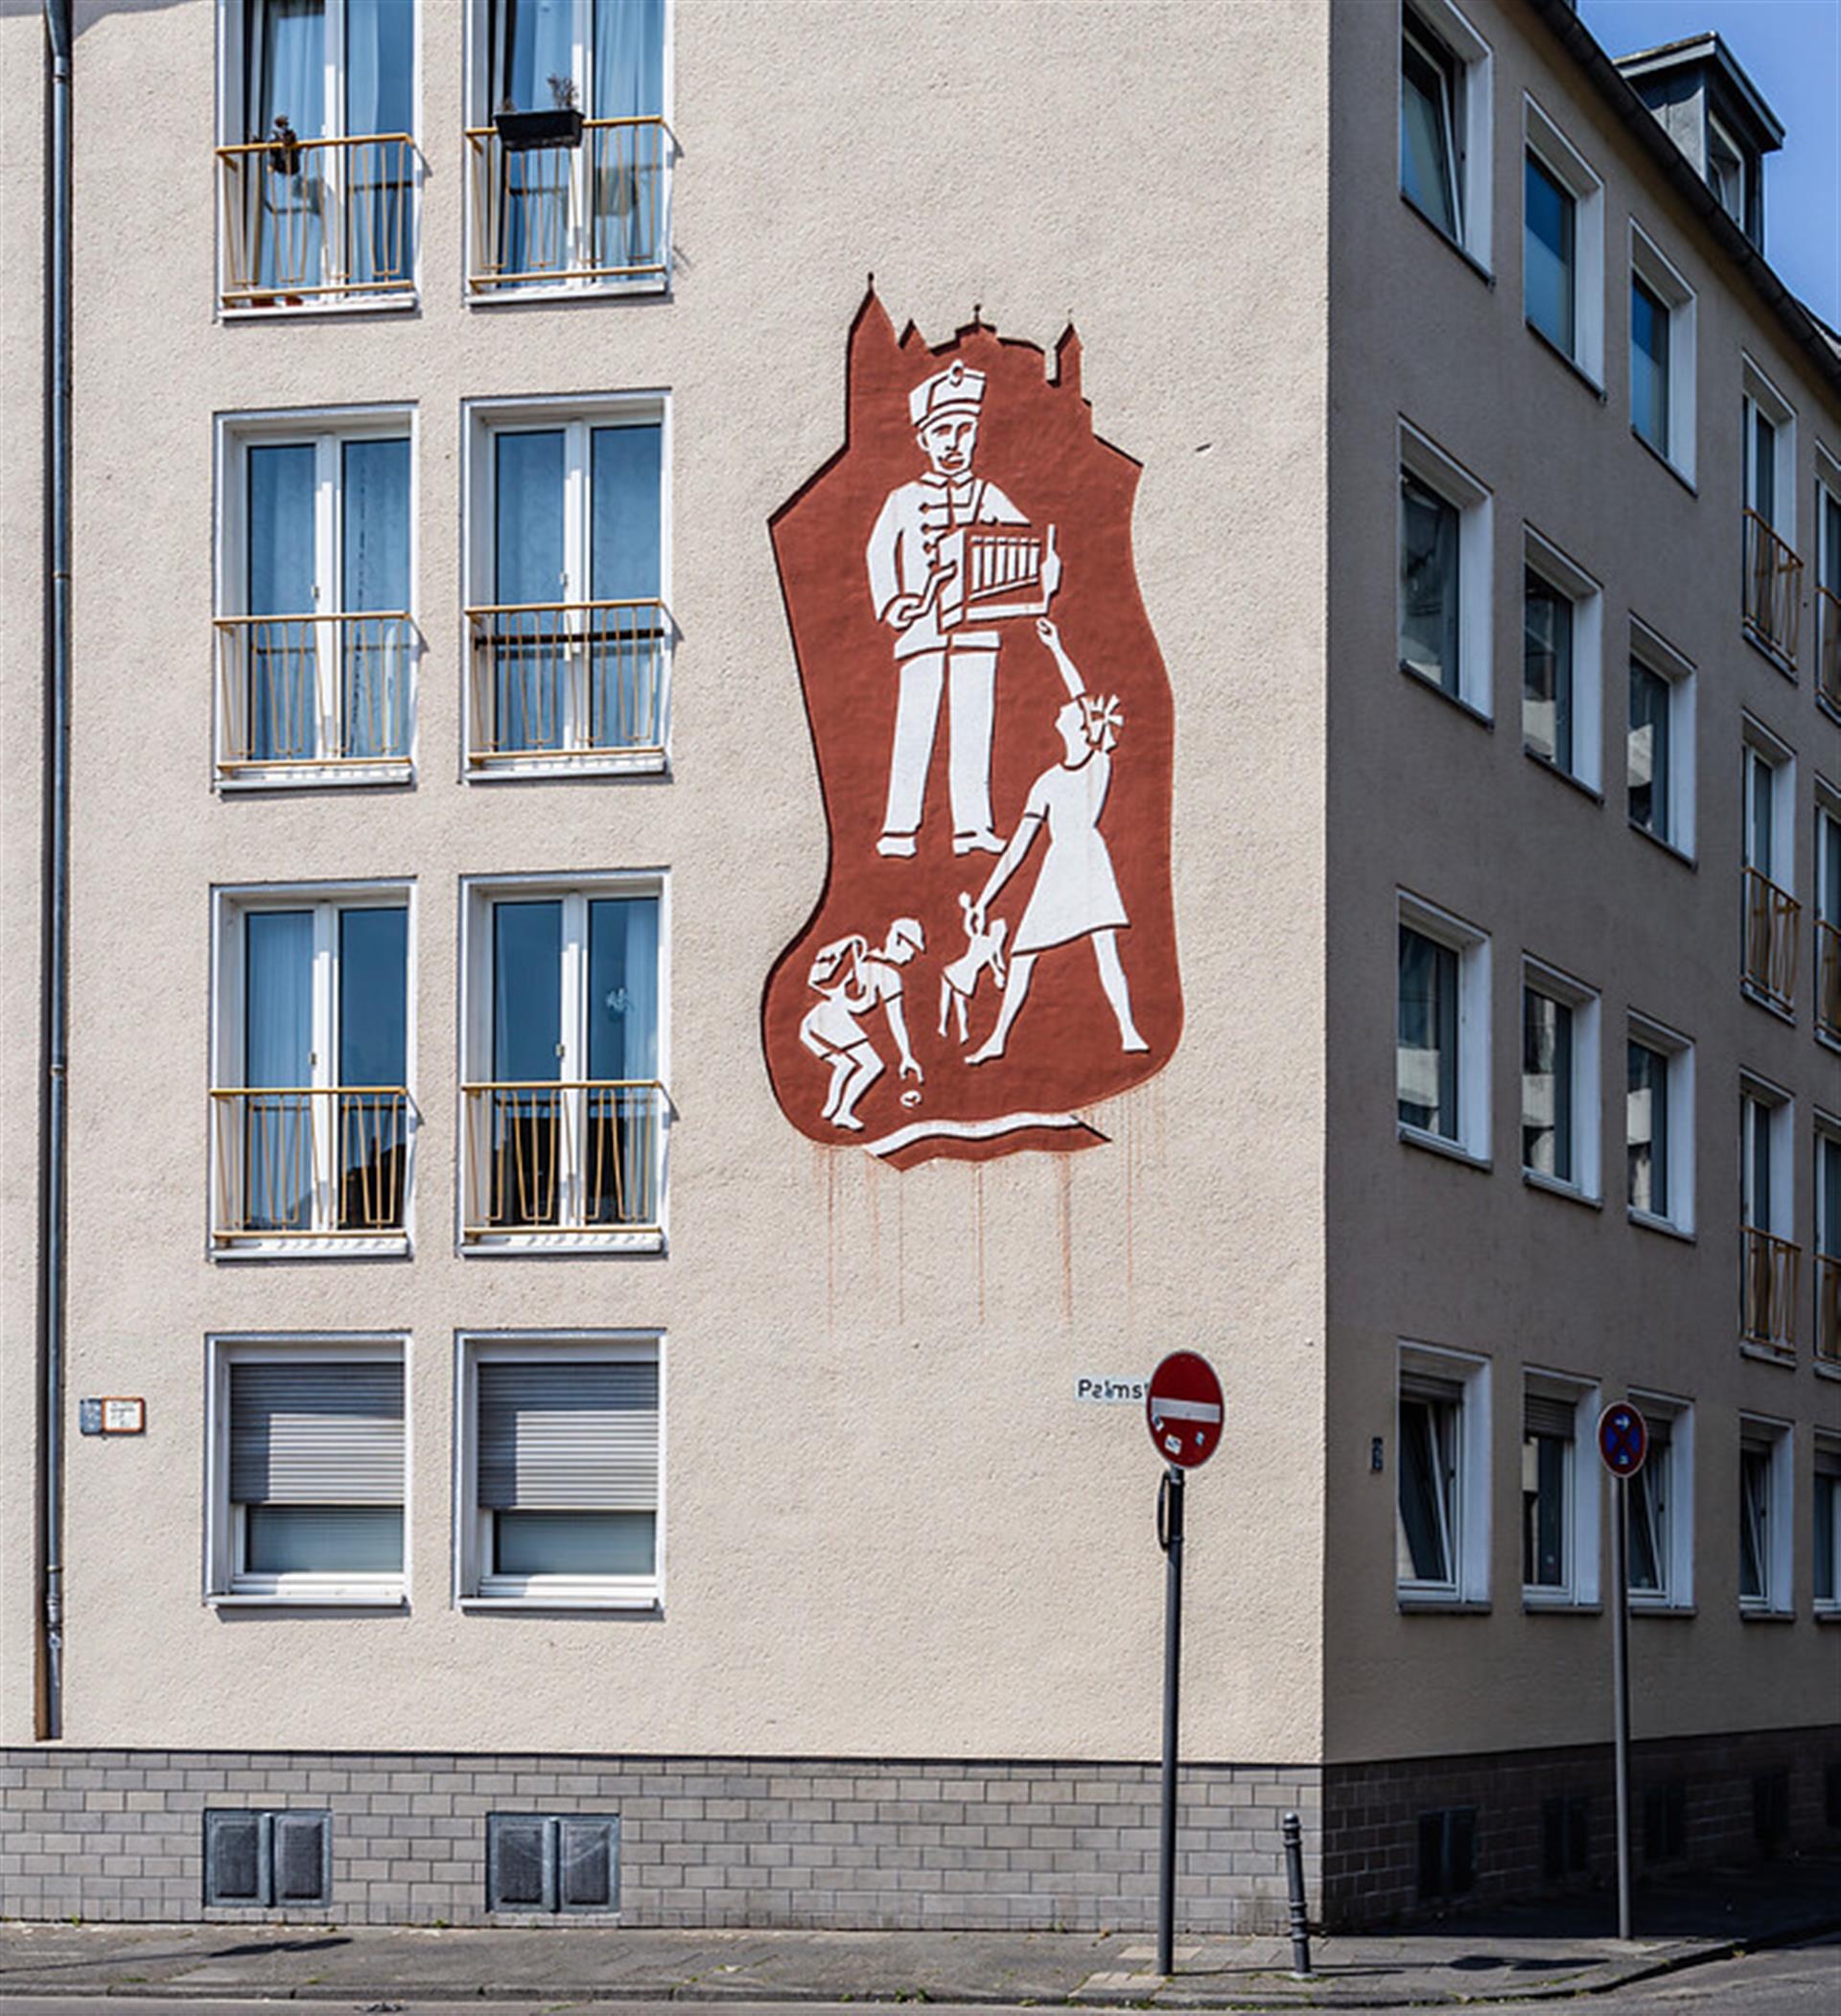 Sgraffito des Militärinvaliden und Drehorgelspielers "Orgels Palm" in der Kölner Innenstadt (2020) &copy; Sebastian Löder / CC BY 4.0